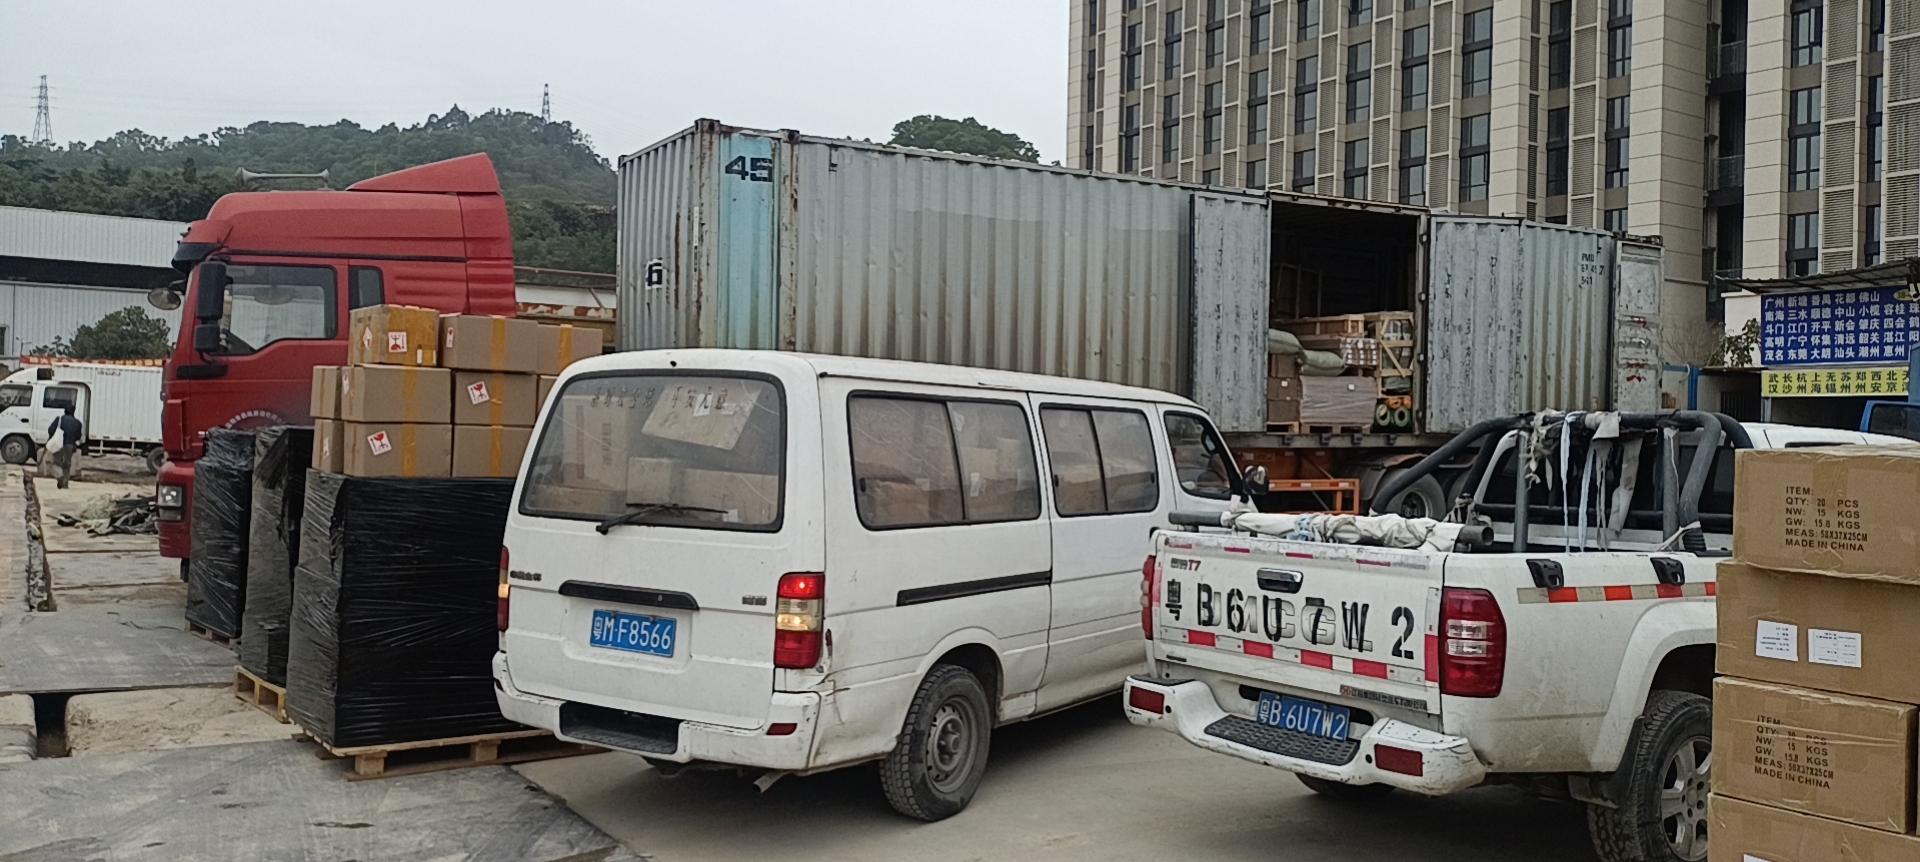 上海奉贤区到丽水整车货运  大件物流运输 仓储服务价格电话  上海发丽水货运公司